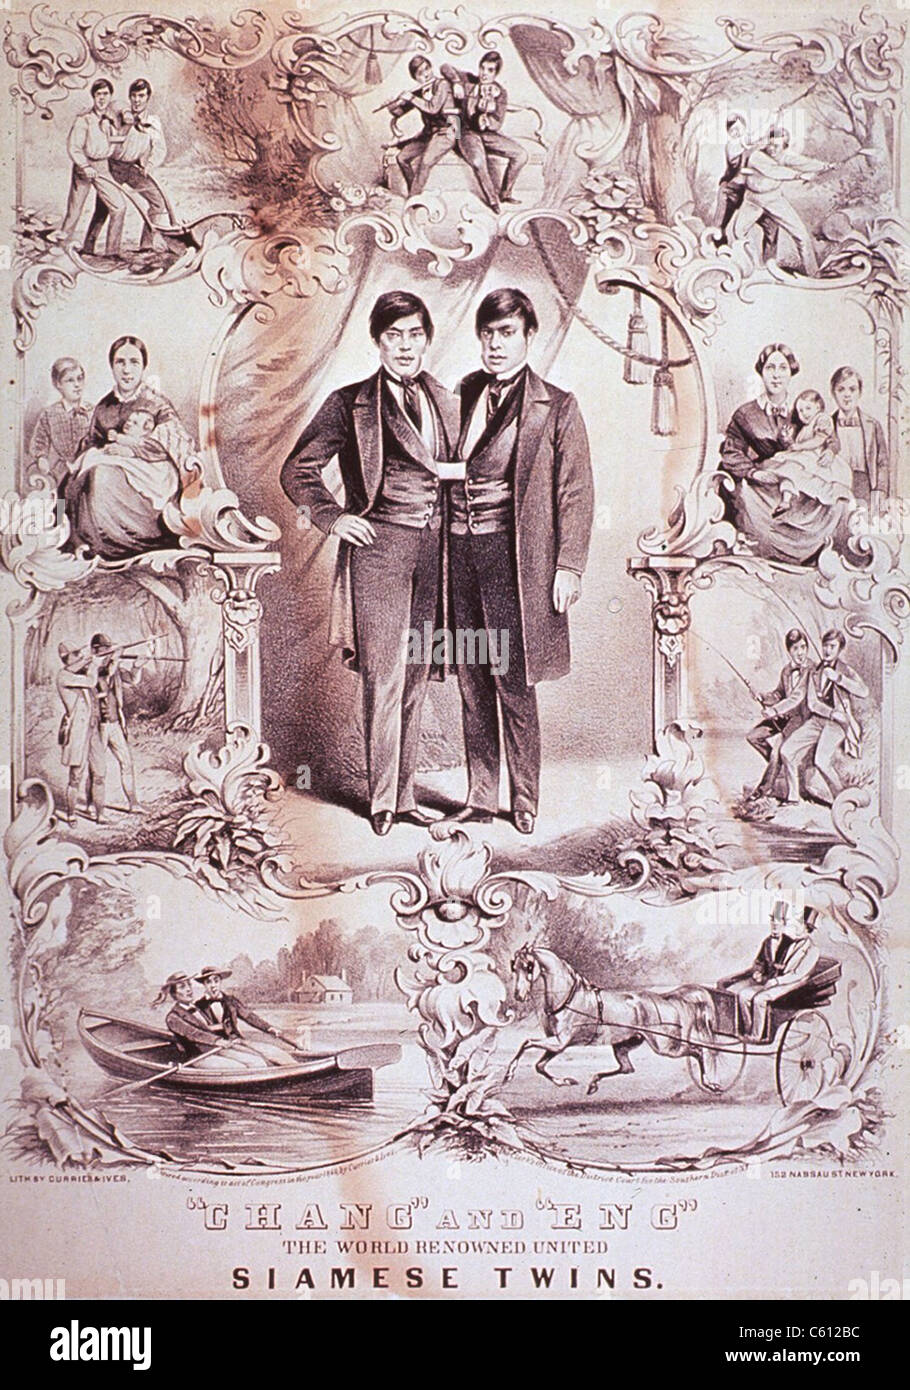 Chang und Eng, (1811-1874), vereint weltweit renommierten siamesische Zwillinge.  Rund um die Zwillinge Porträt sind Szenen ihrer Aktivitäten Stockfoto